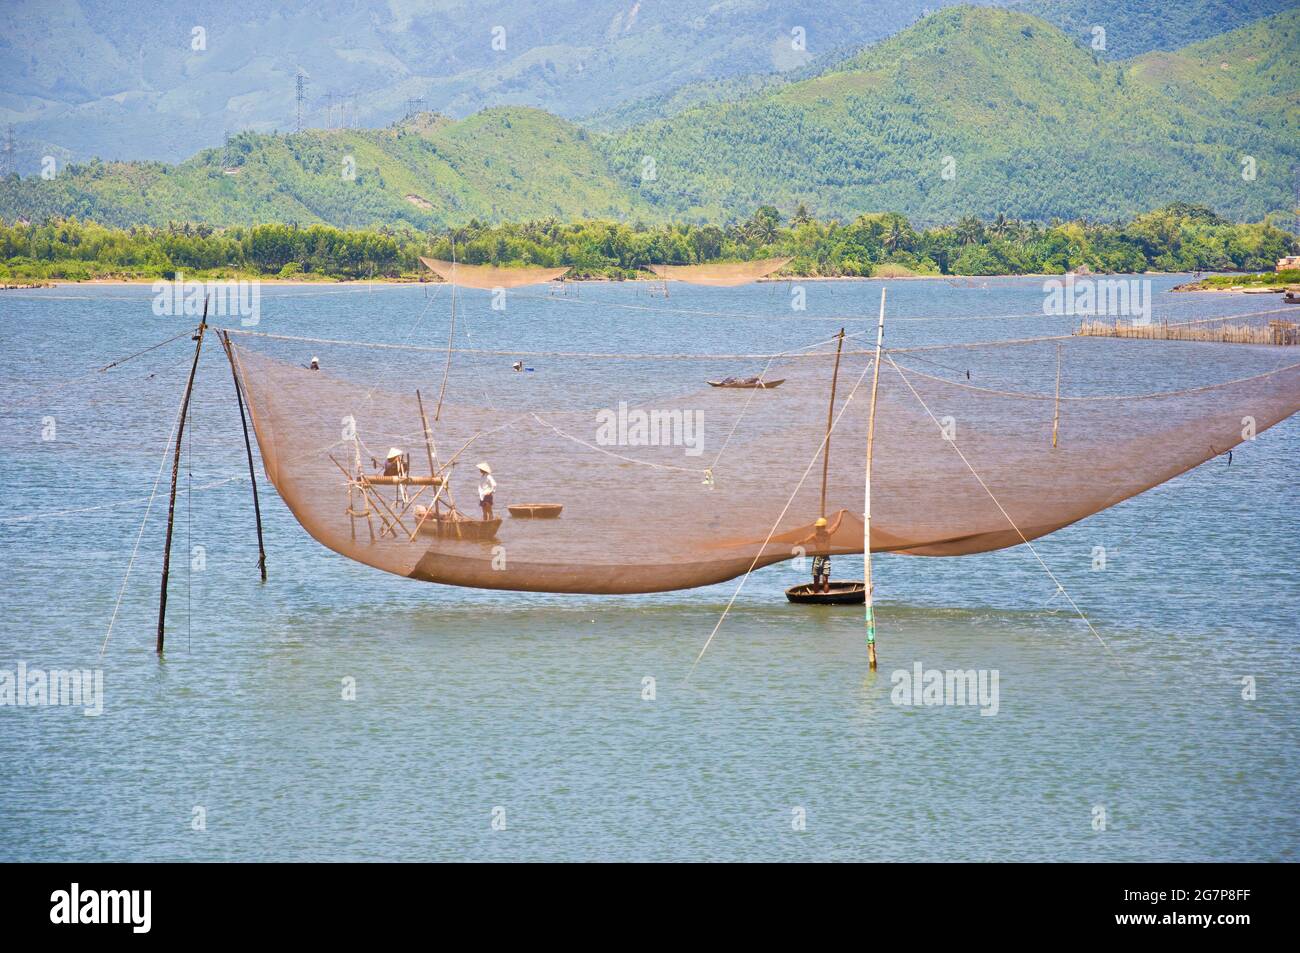 Grand filet de pêche dans l'eau, avec des pêcheurs locaux dans des petits bateaux faits de l'homme, Vietnam. Banque D'Images